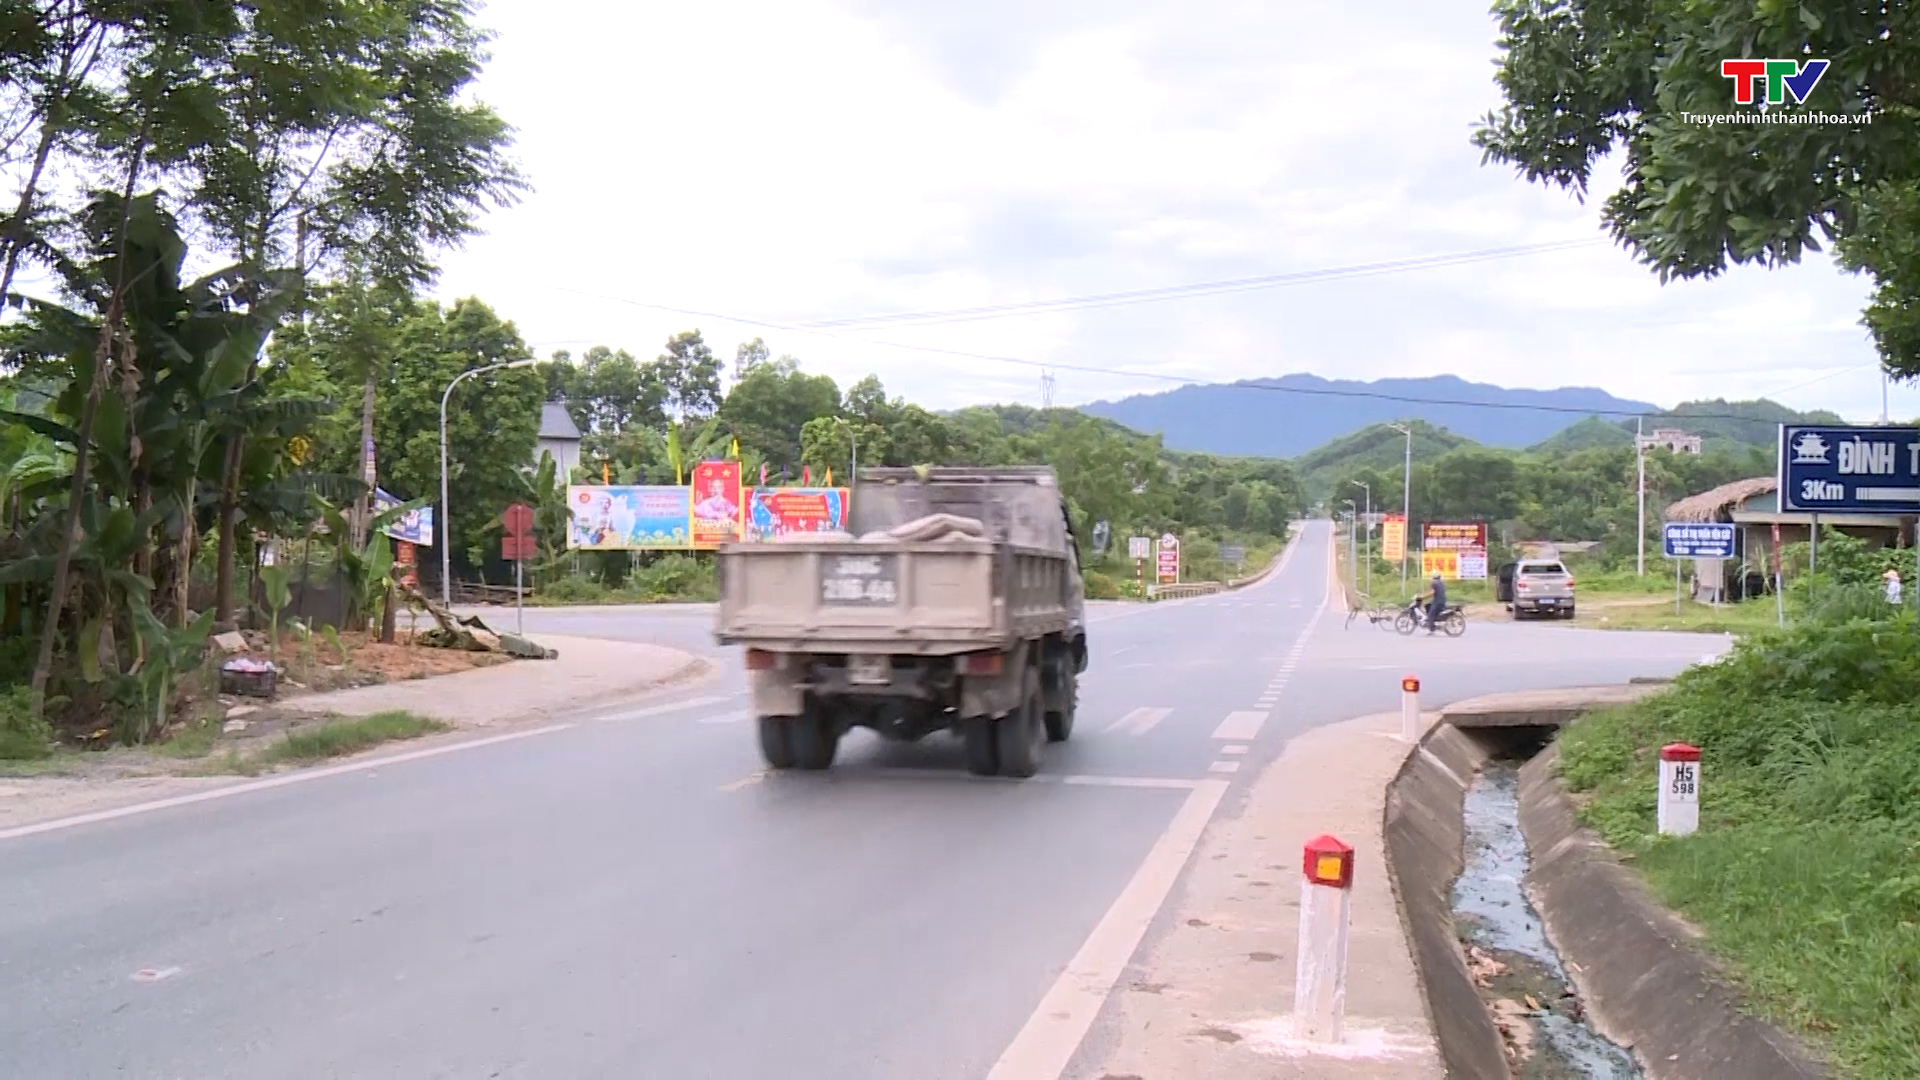 Công an huyện Như Xuân triển khai đồng bộ giải pháp kéo giảm tai nạn giao thông- Ảnh 2.